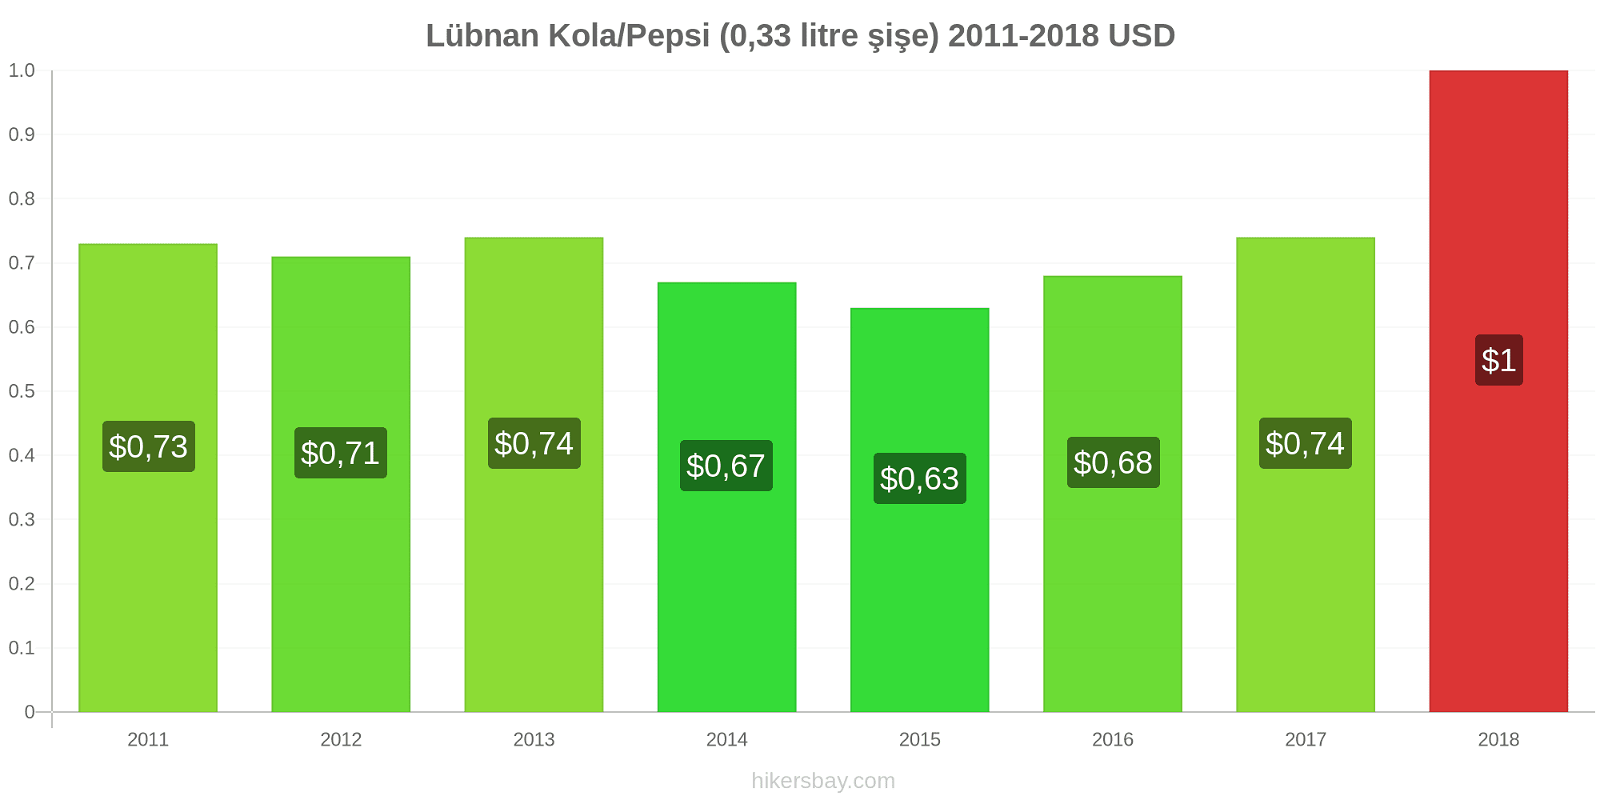 Lübnan fiyat değişiklikleri Kola/Pepsi (0.33 litre şişe) hikersbay.com